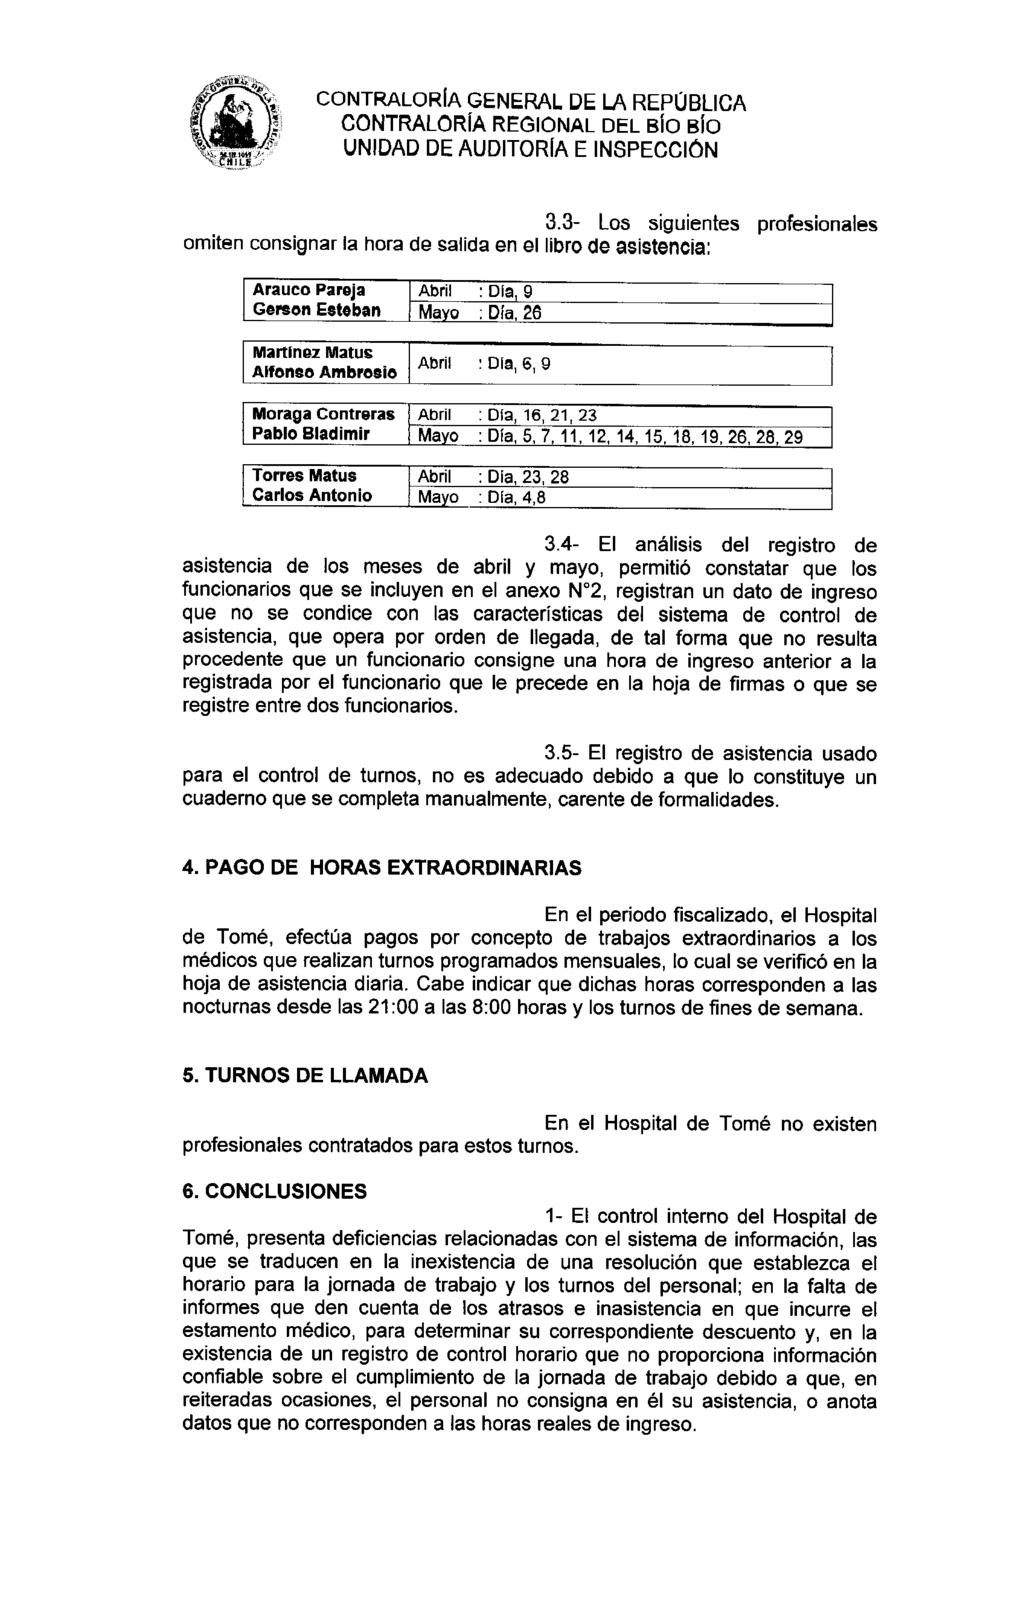 CONTRALORÍA REGIONAL DEL 1310 I310 UNIDAD DE AUDITORIA E INSPECCIÓN 3.